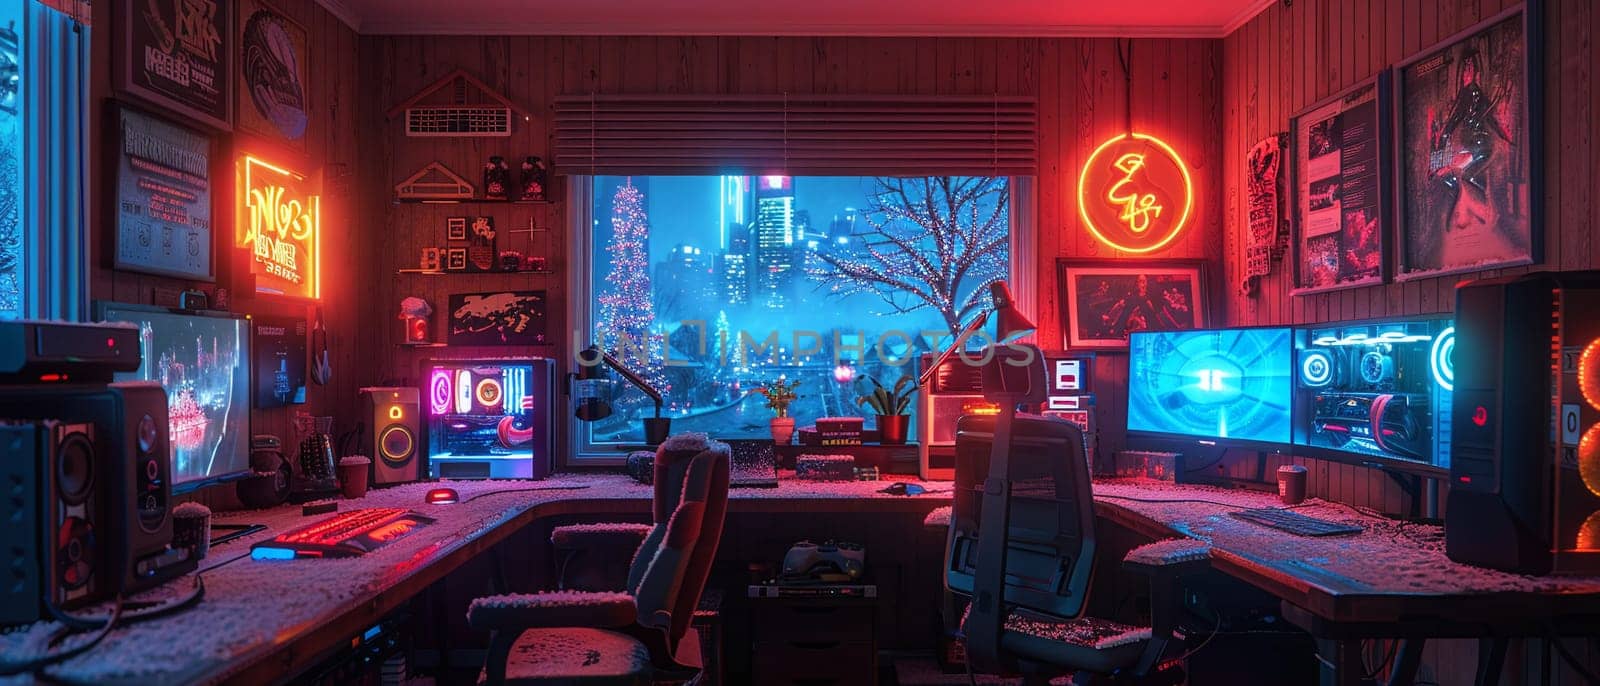 Cyberpunk gaming den with neon lights and high-tech setups.